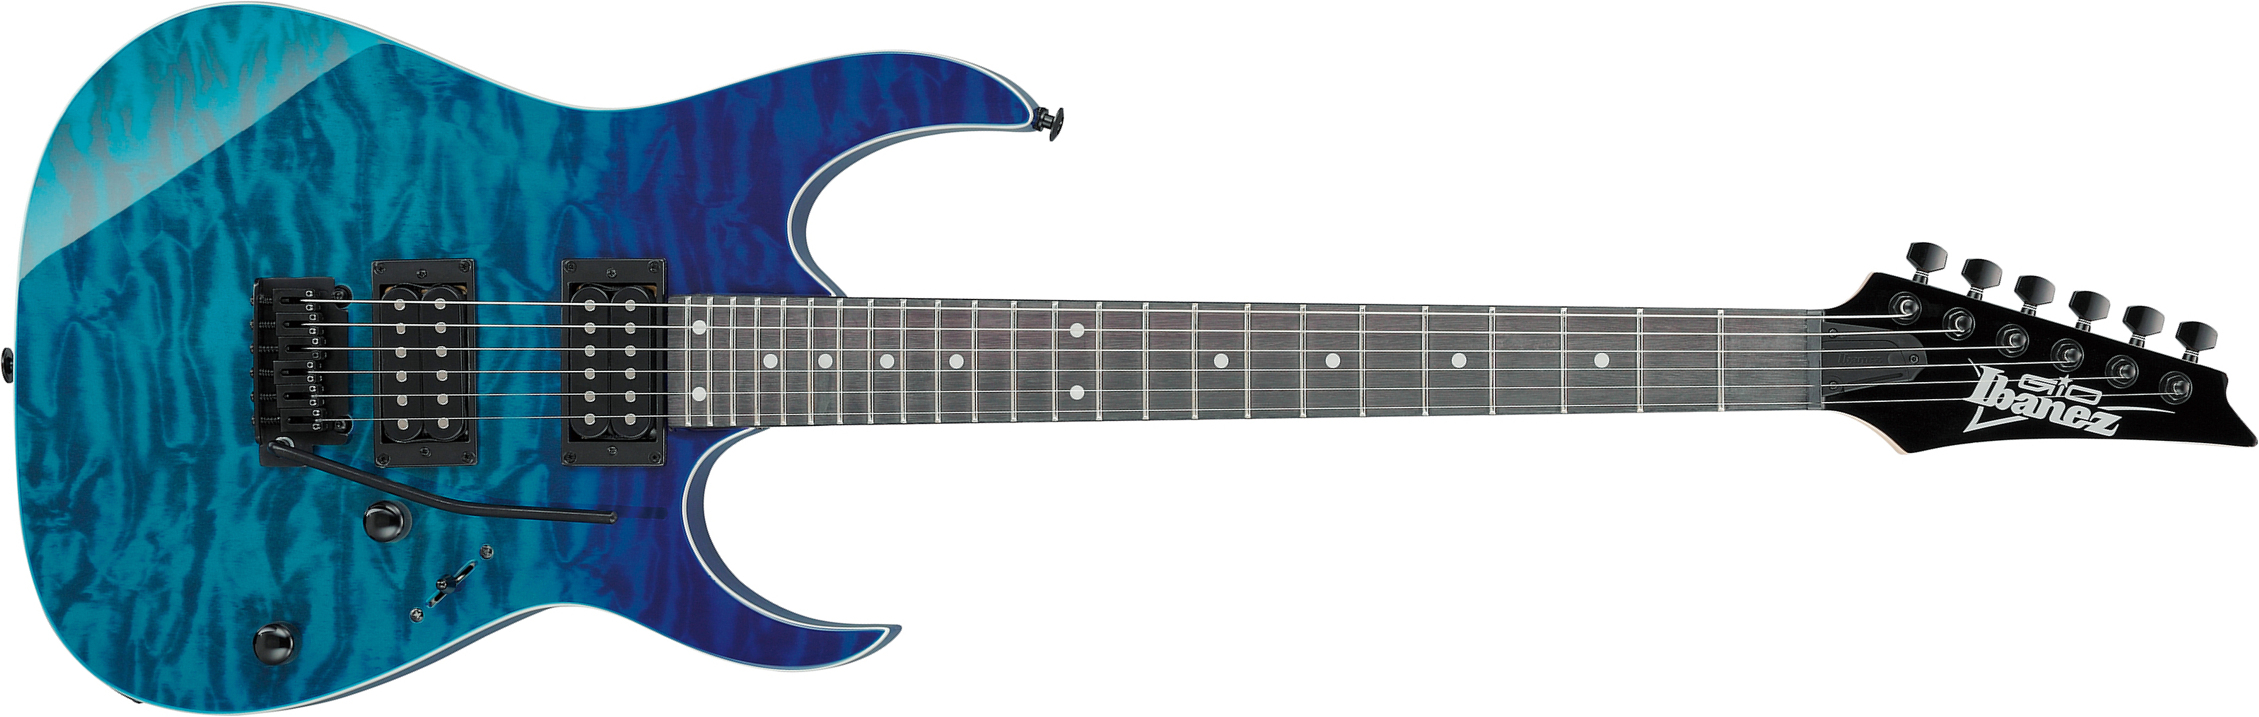 Ibanez Grg120qasp Bgd Gio 2h Trem Pur - Blue Gradation - Metalen elektrische gitaar - Main picture